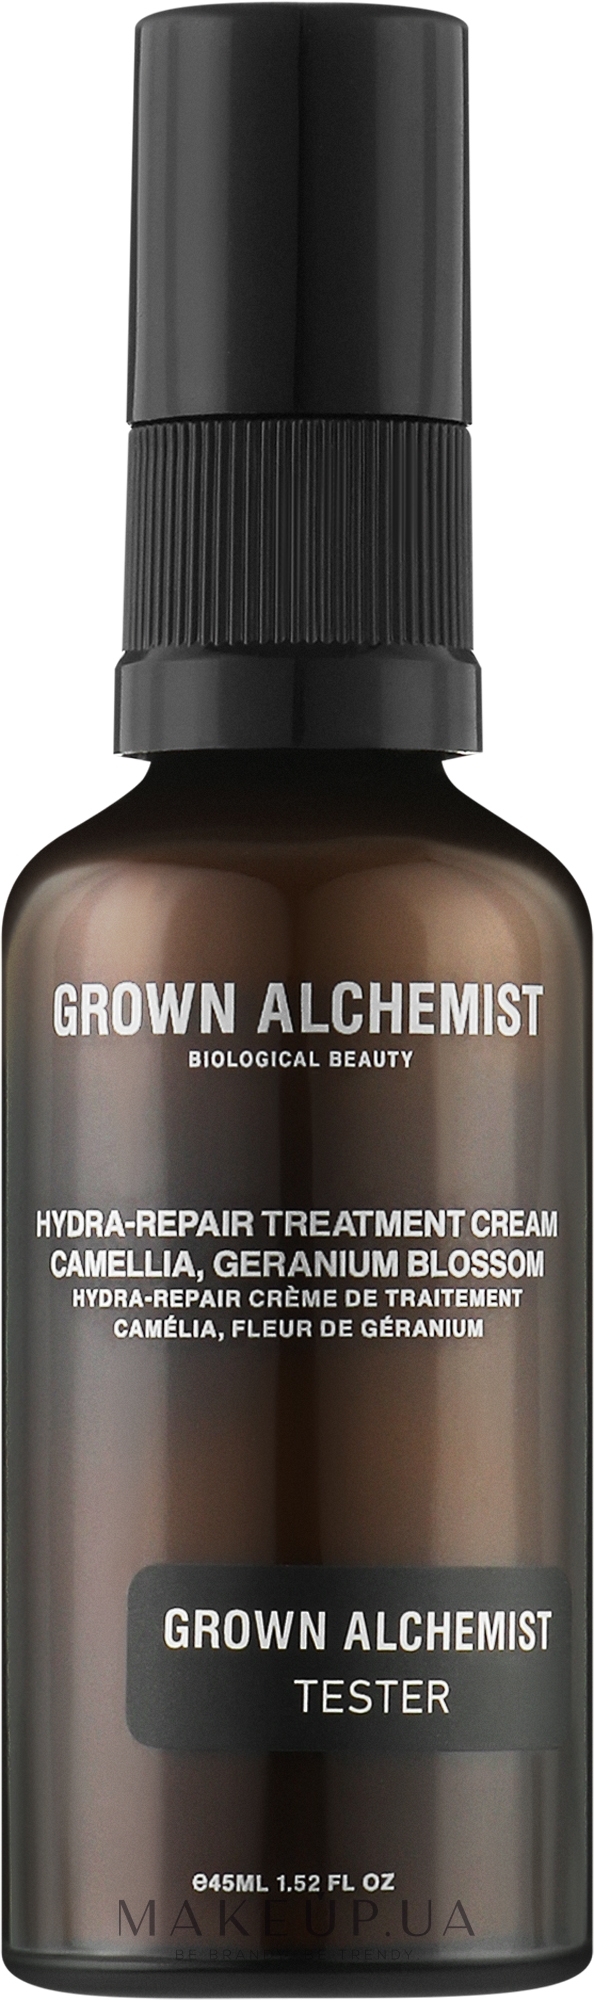 Крем для обличчя - Geranium Cream за Treatment ціною Blossom купити Grown (тестер): Camellia, в Україні найкращою Alchemist Hydra-Repair